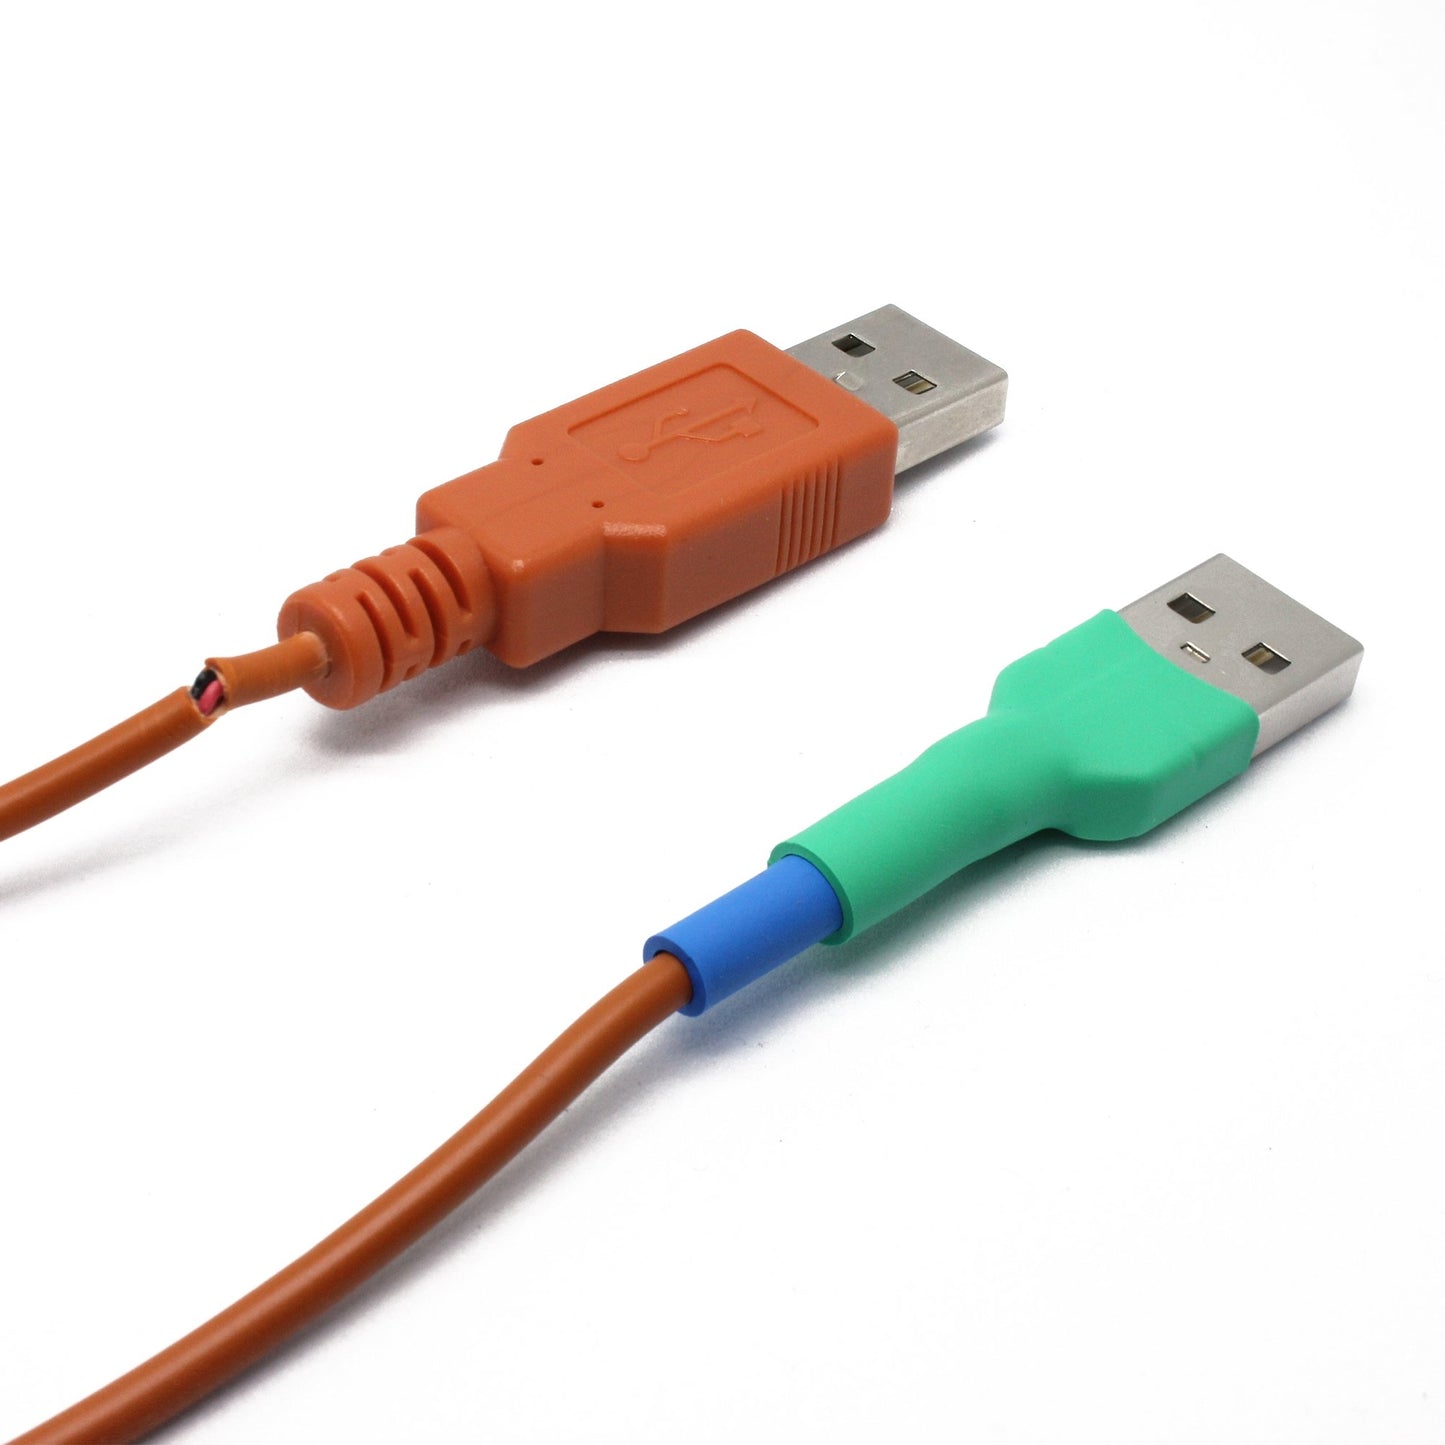 Vergleich: Ein recable in den Farben pastellgrün, blau und rot und ein defektes Kabel eines alternativen Herstellers